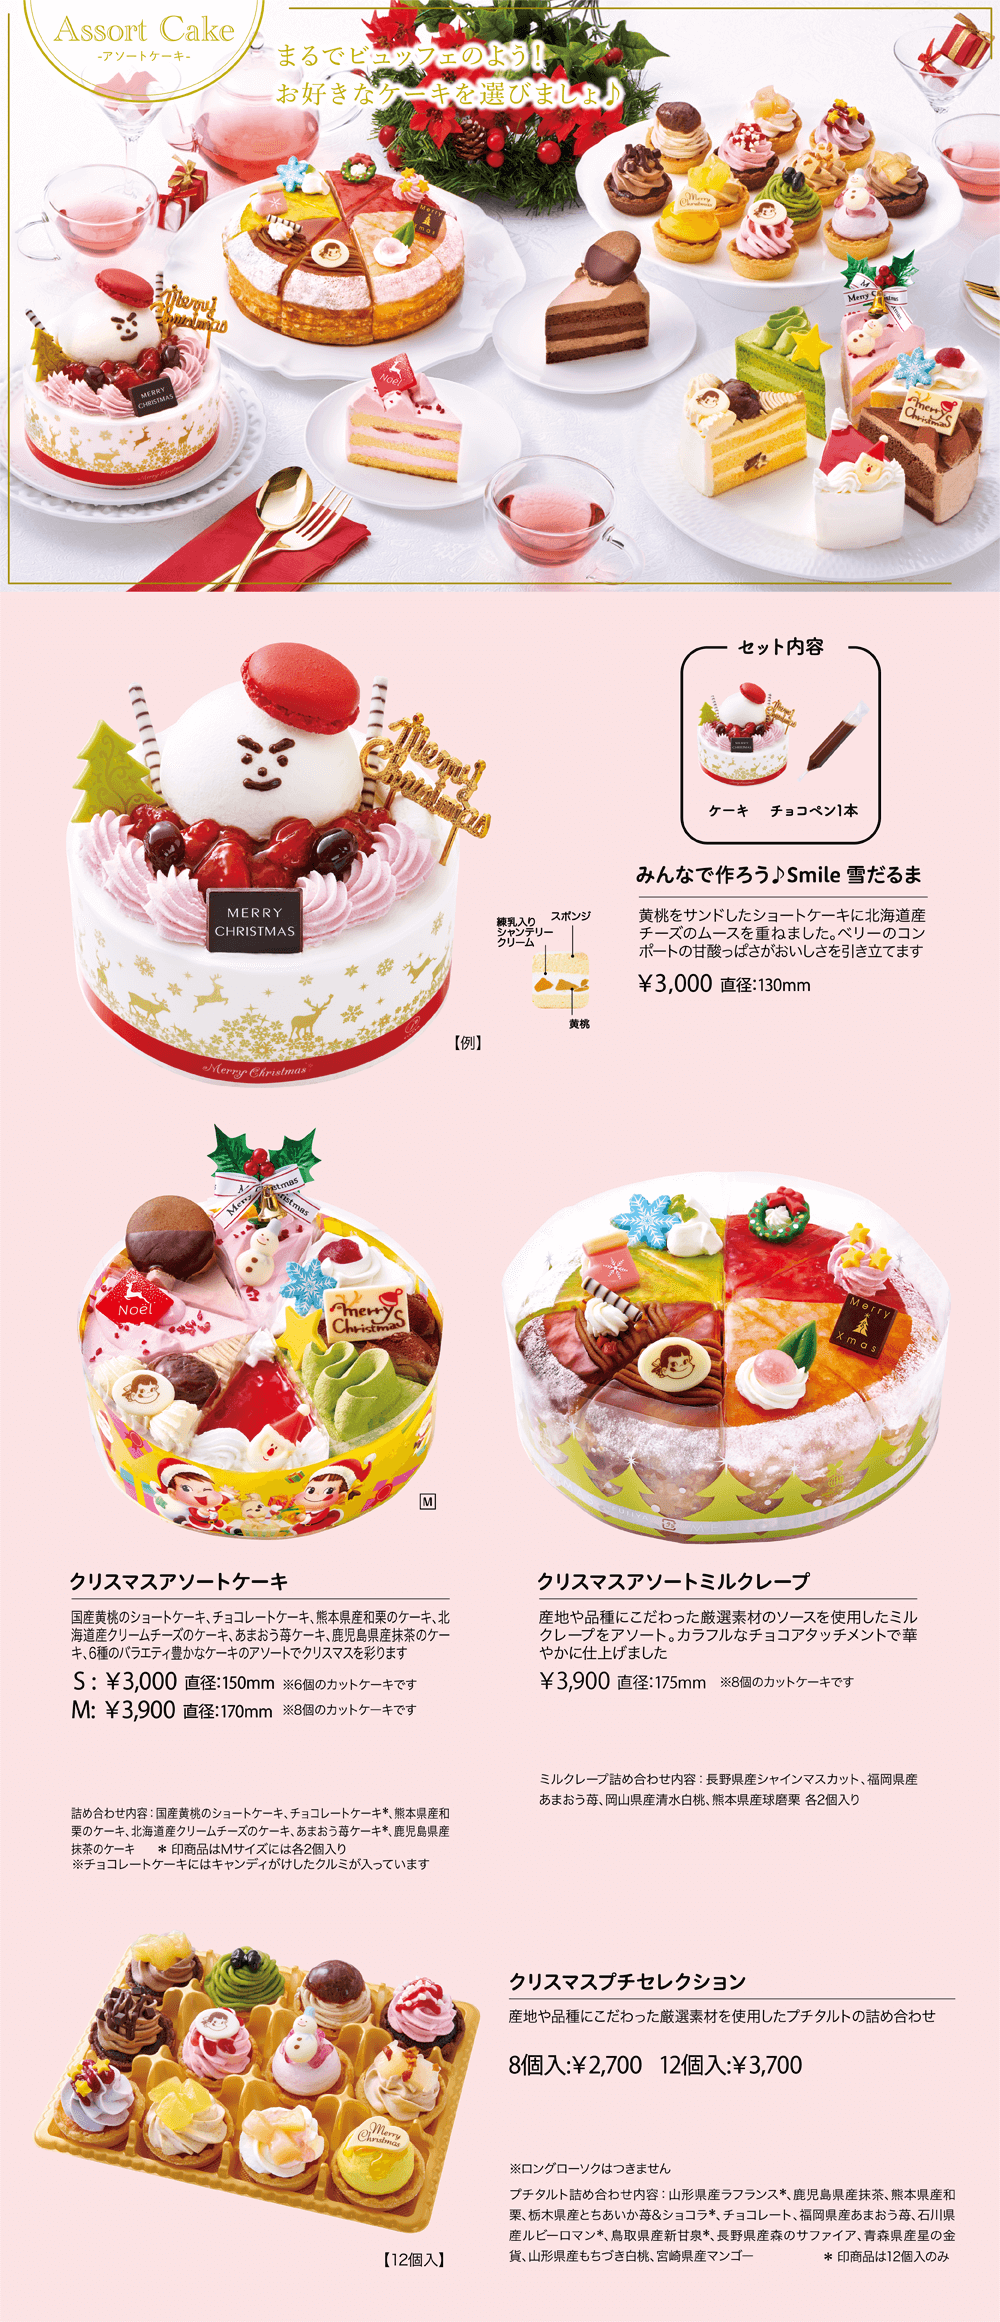 Assort Cake クリスマスアソートケーキ ショートケーキ、チョコレートケーキ、マロンケーキ、レアチーズケーキ、あまおう苺ケーキ、鹿児島県産抹茶のケーキ、6種のバラエティ豊かなケーキのアソートでクリスマスを彩ります S:￥2,900 直径：150mm ※6個のカットケーキです M:￥3,800 直径：170mm ※8個のカットケーキです 詰め合わせ内容：ショートケーキ、チョコレートケーキ*、マロンケーキ、レアチーズケーキ、あまおう苺ケーキ*、鹿児島県産抹茶のケーキ *印商品はMサイズには各2個入り クリスマスアソートミルクレープ 産地や品種にこだわった厳選素材ソースを使用したミルクレープをアソートしました ￥3,800 直径：175mm ※8個のカットケーキです 詰め合わせ内容：長野県産森のサファイアブルーベリー、あまおう苺、北海道産夕張メロン、鹿児島県産抹茶 各2個ずつ クリスマスプチセレクション 岩手県産練乳や福岡県産あまおう苺ソースなど、厳選素材を使用したプチタルトの詰め合わせ 8個入:￥2,600 12個入:￥3,600 ※ロングローソクはつきません 詰め合わせ内容：鹿児島県産抹茶、瀬戸内大長レモン、福岡県産あまおう苺、熊本県産和栗、長野県産森のサファイアブルーベリー、宮崎県産マンゴー、北海道産マスカルポーネティラミス、岩手県産練乳ミルキー、チョコミント*、茨城県産紅天使*、福島県産あかつき白桃*、チョコレート* *印商品は12個入のみ